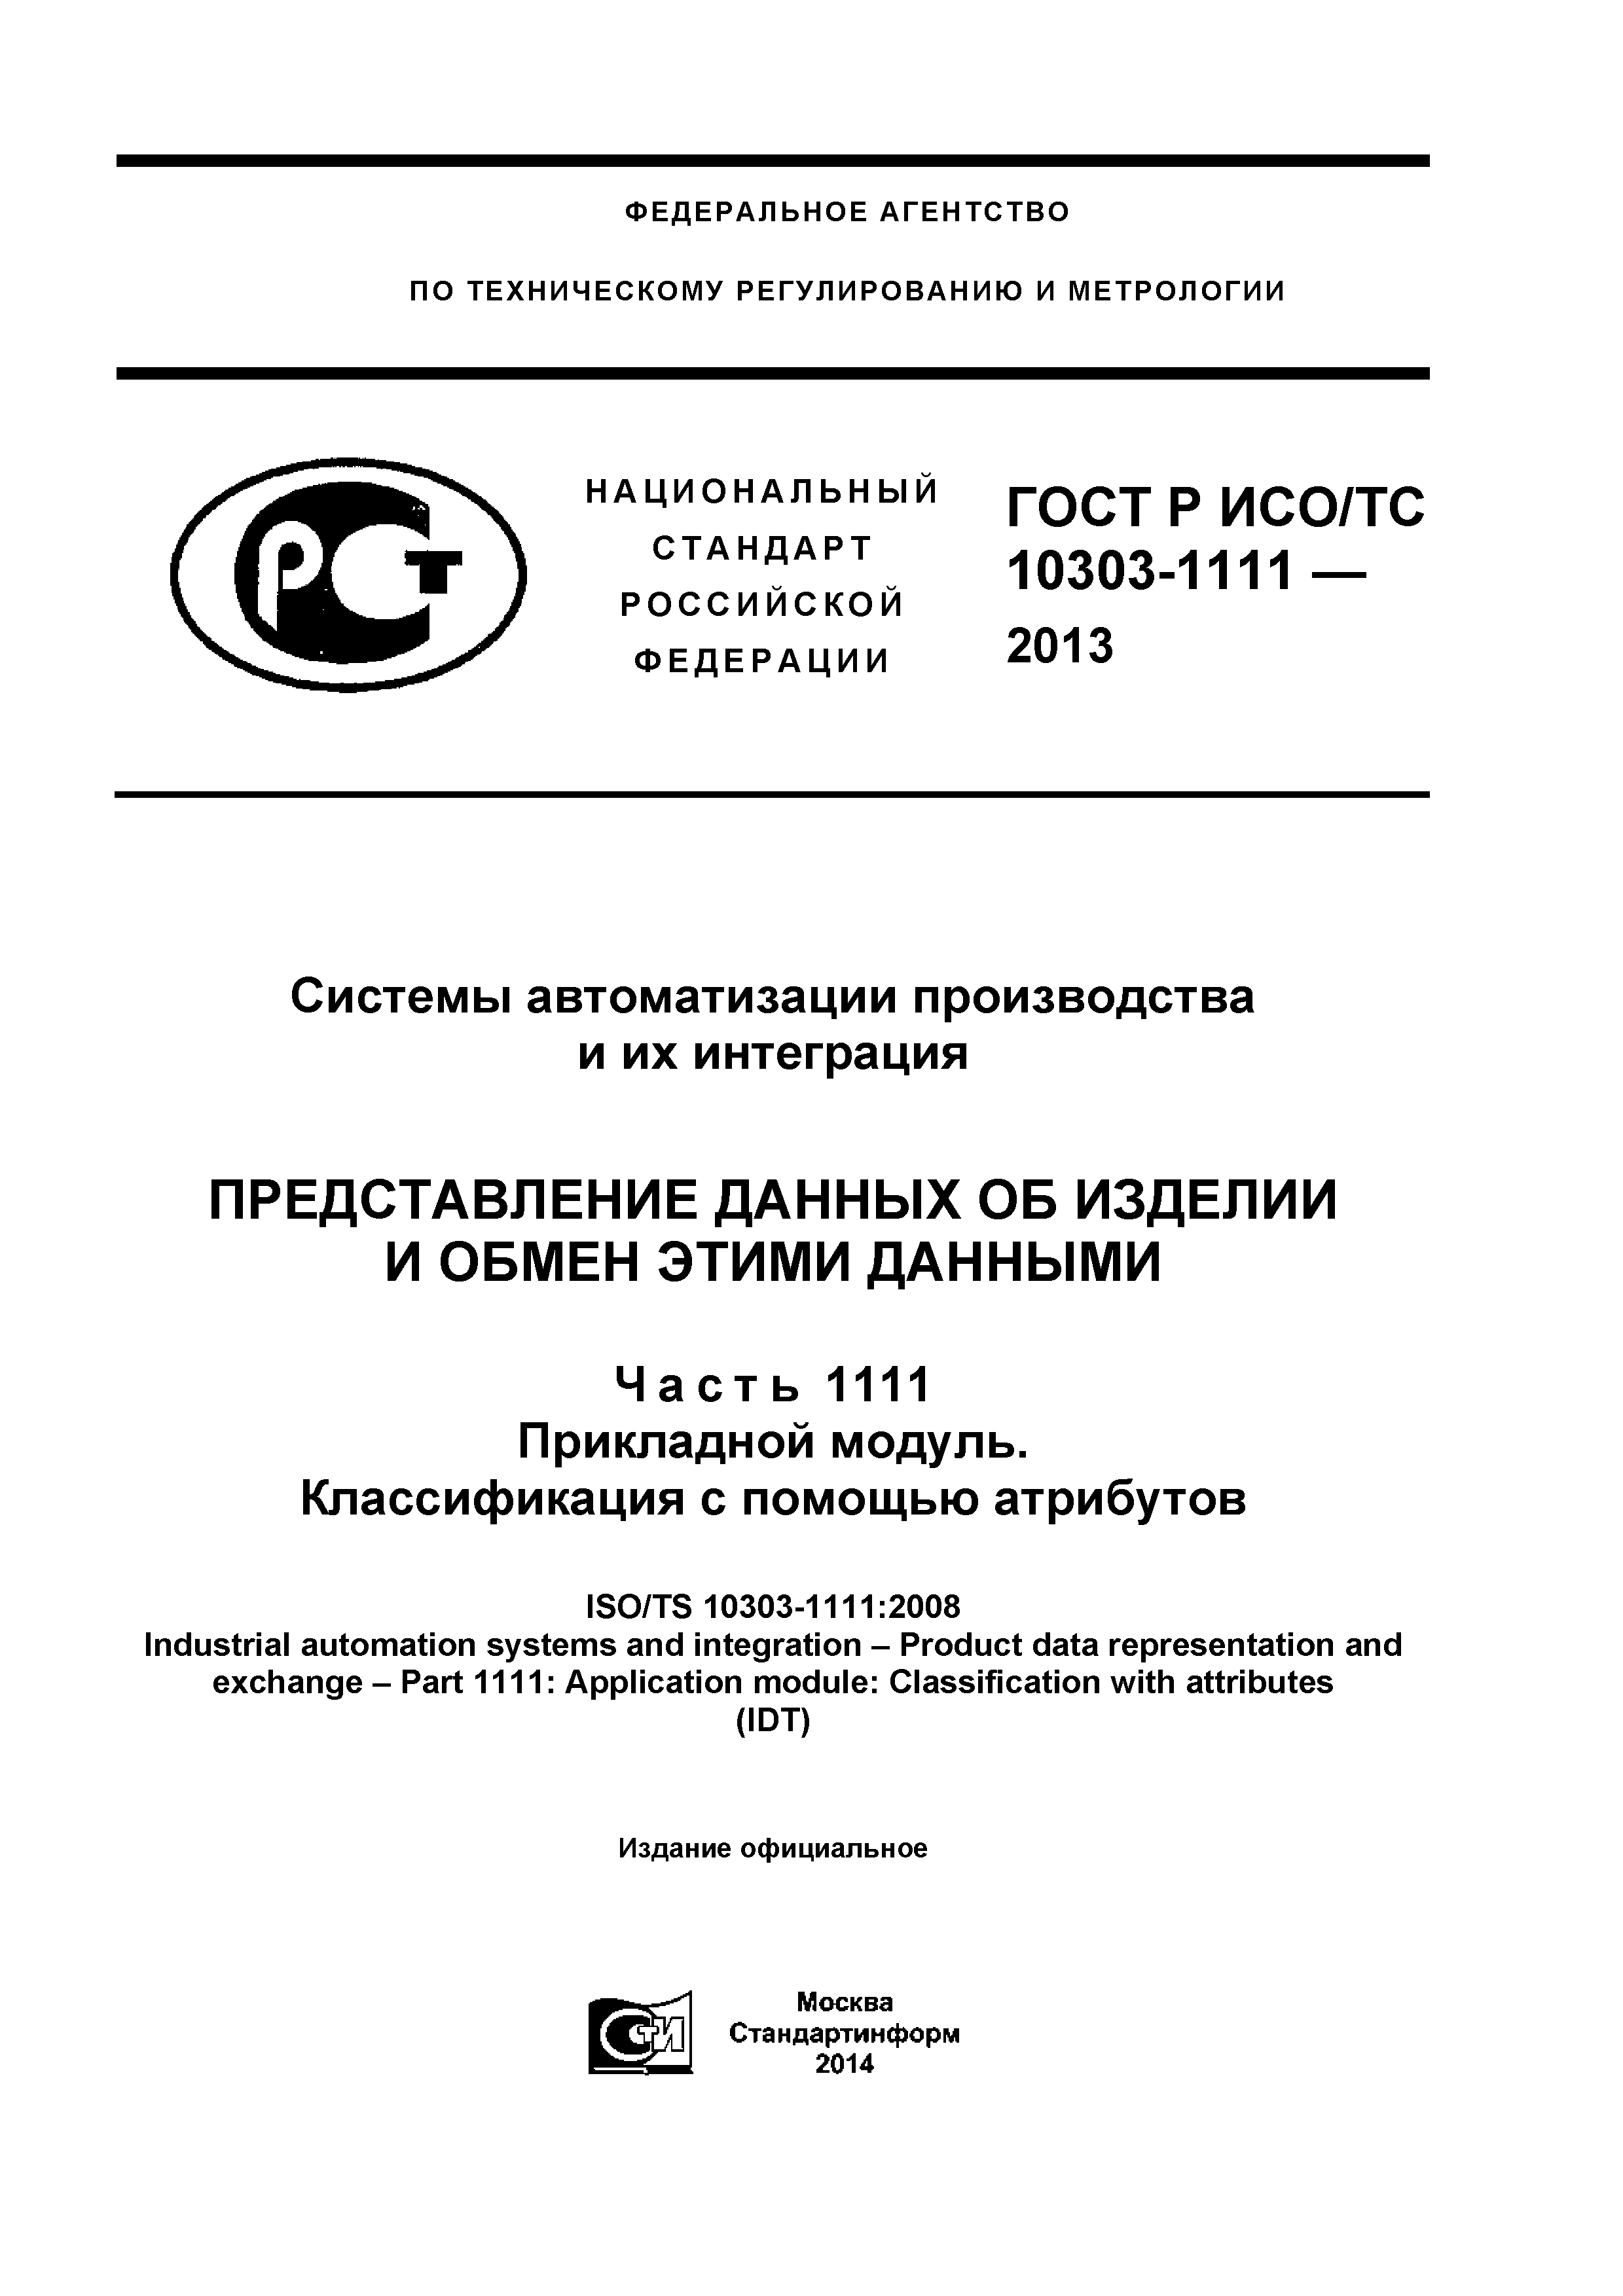 ГОСТ Р ИСО/ТС 10303-1111-2013